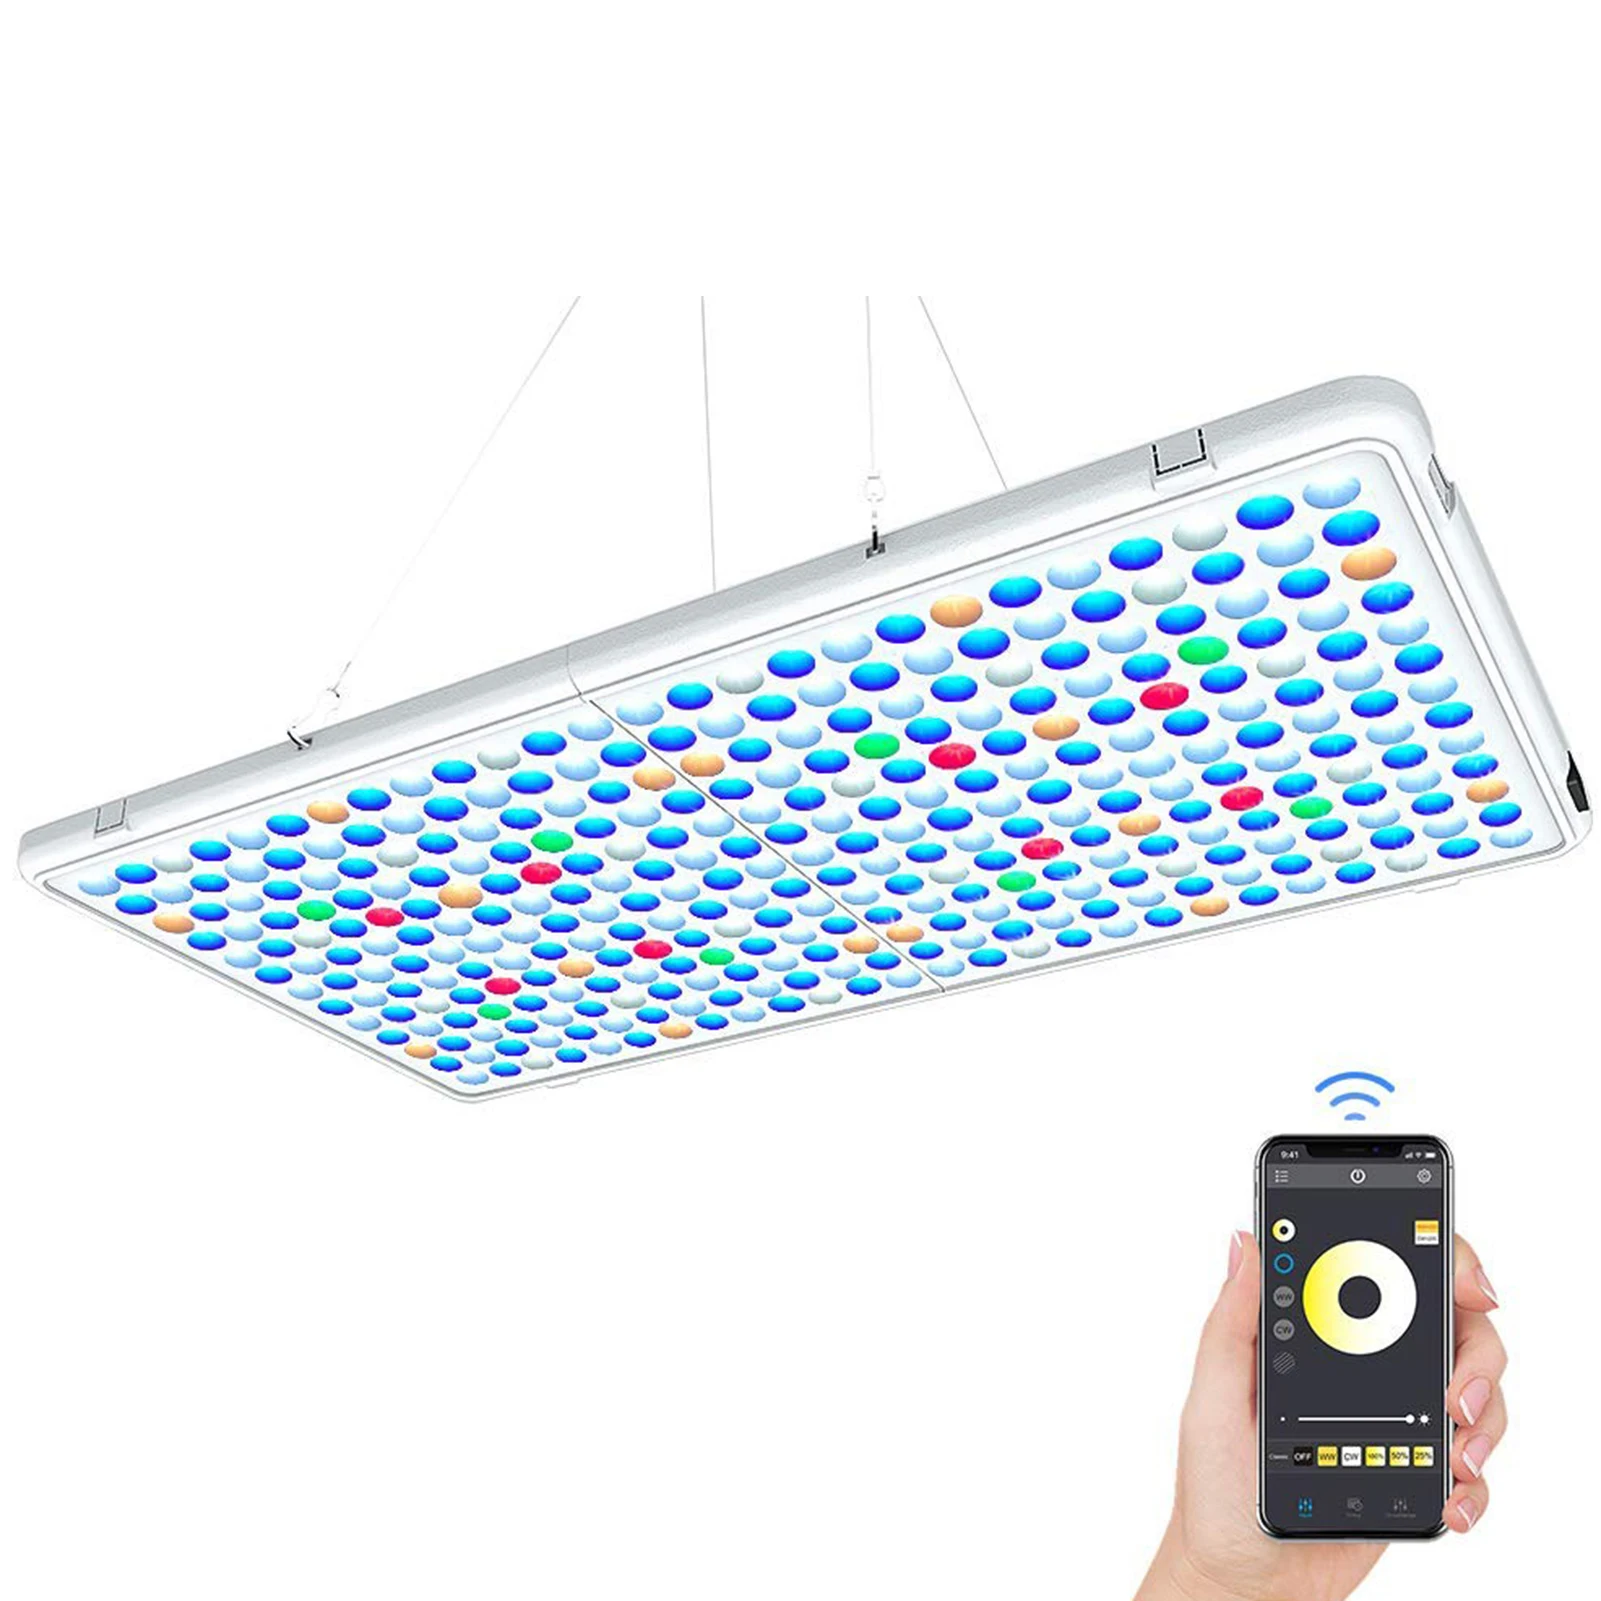 저렴한 LED 수족관 조명 전체 스펙트럼 밝기 조절 조명 램프, 물고기 탱크 담수 및 바닷물 P7Ding